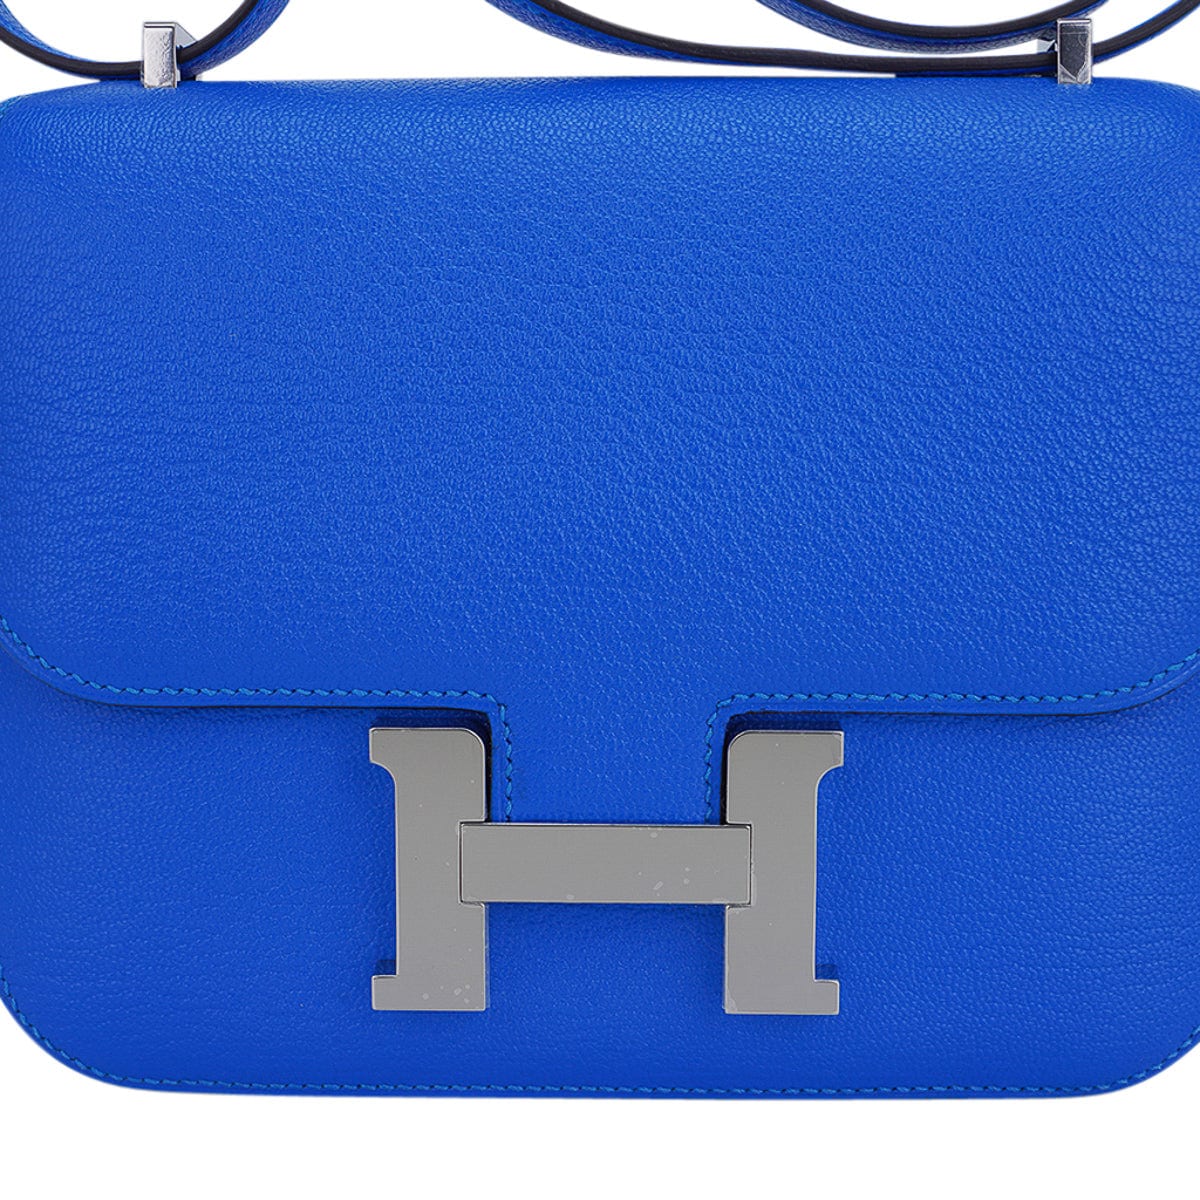 Hermes Constance Bag Epsom 18 Blue